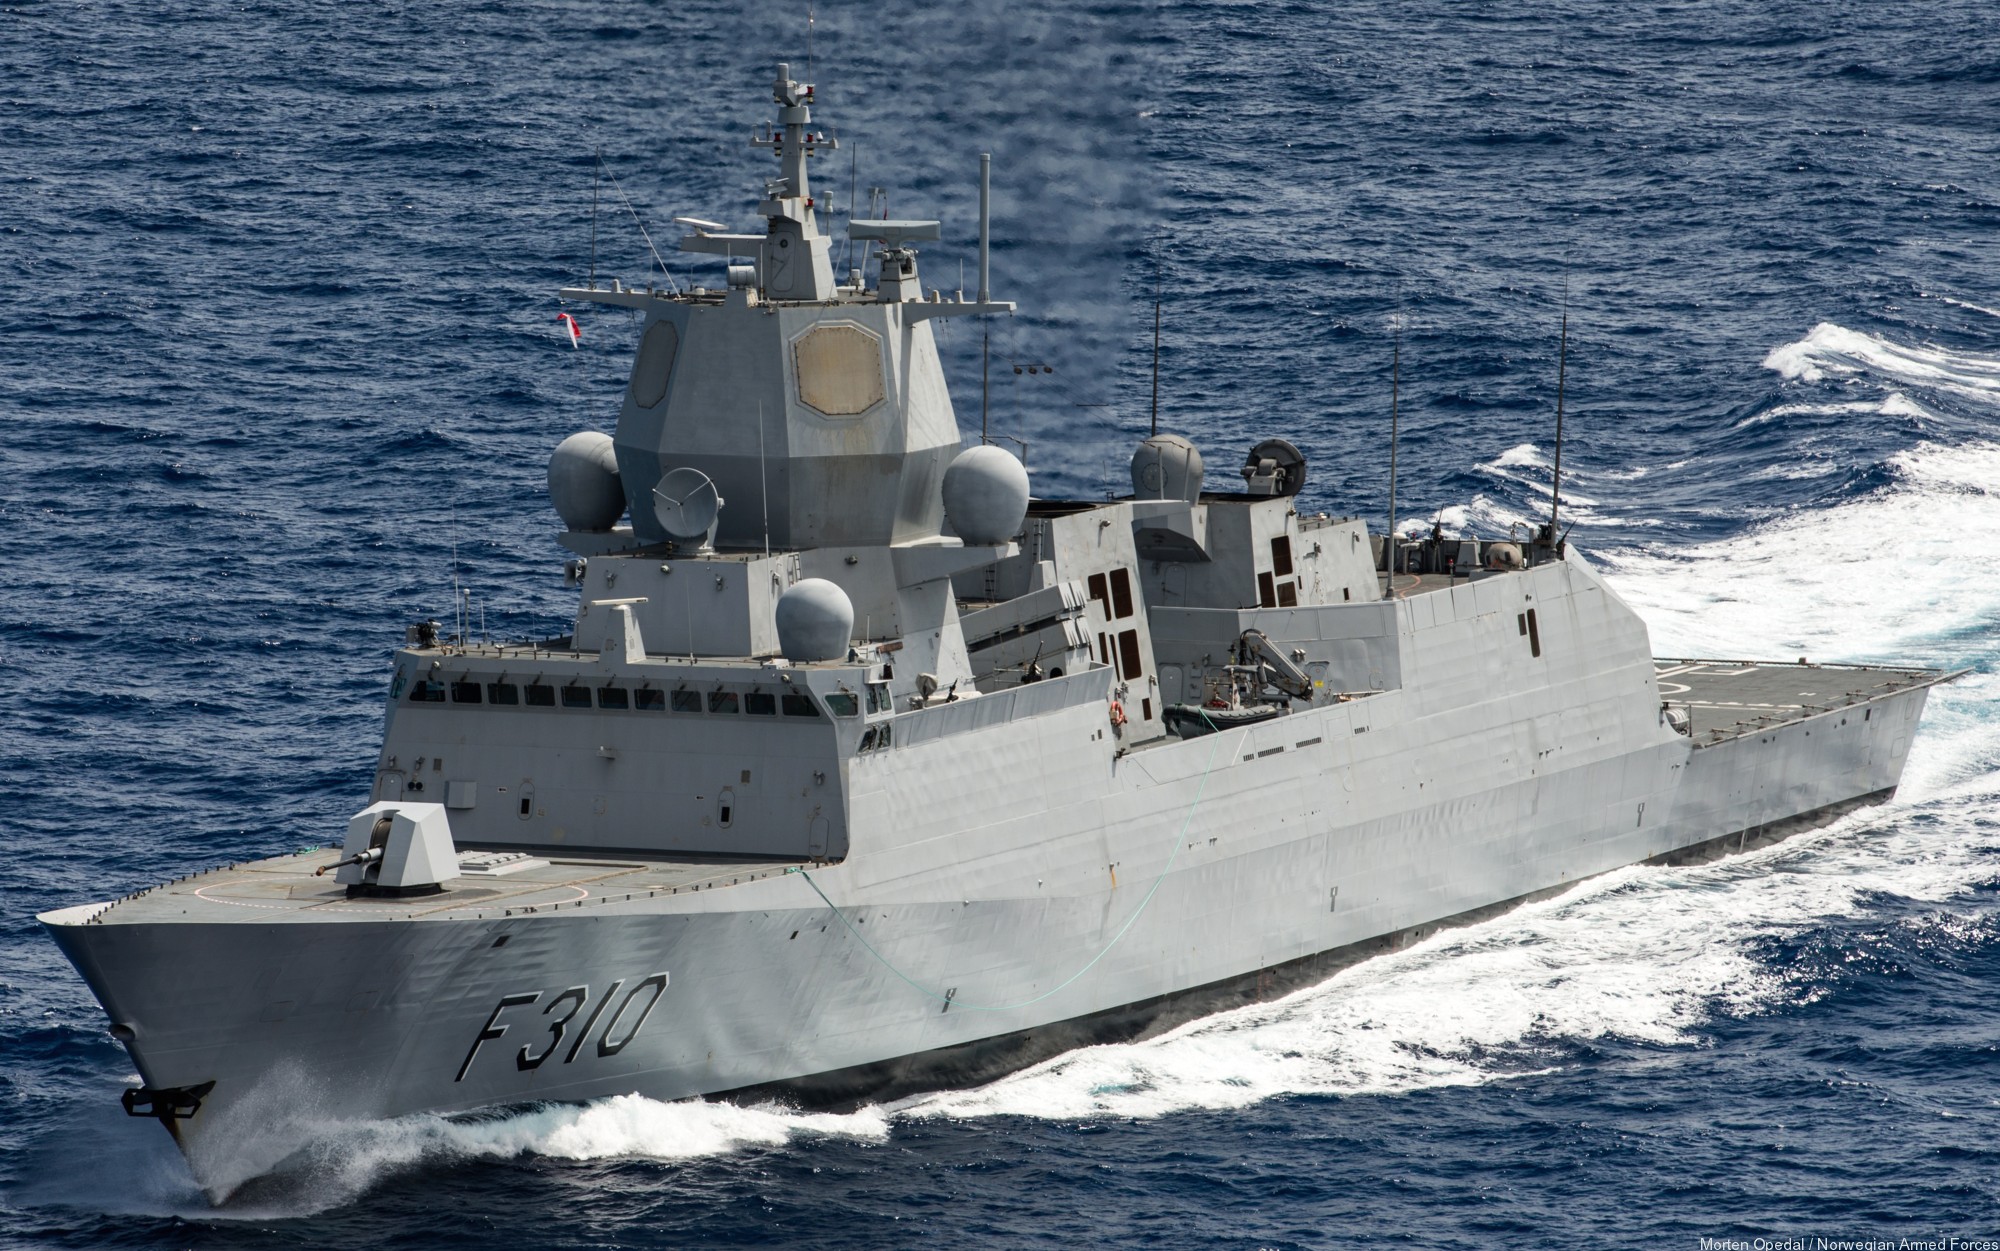 f-310 fridtjof nansen hnoms knm frigate royal norwegian navy sjoforsvaret 05a